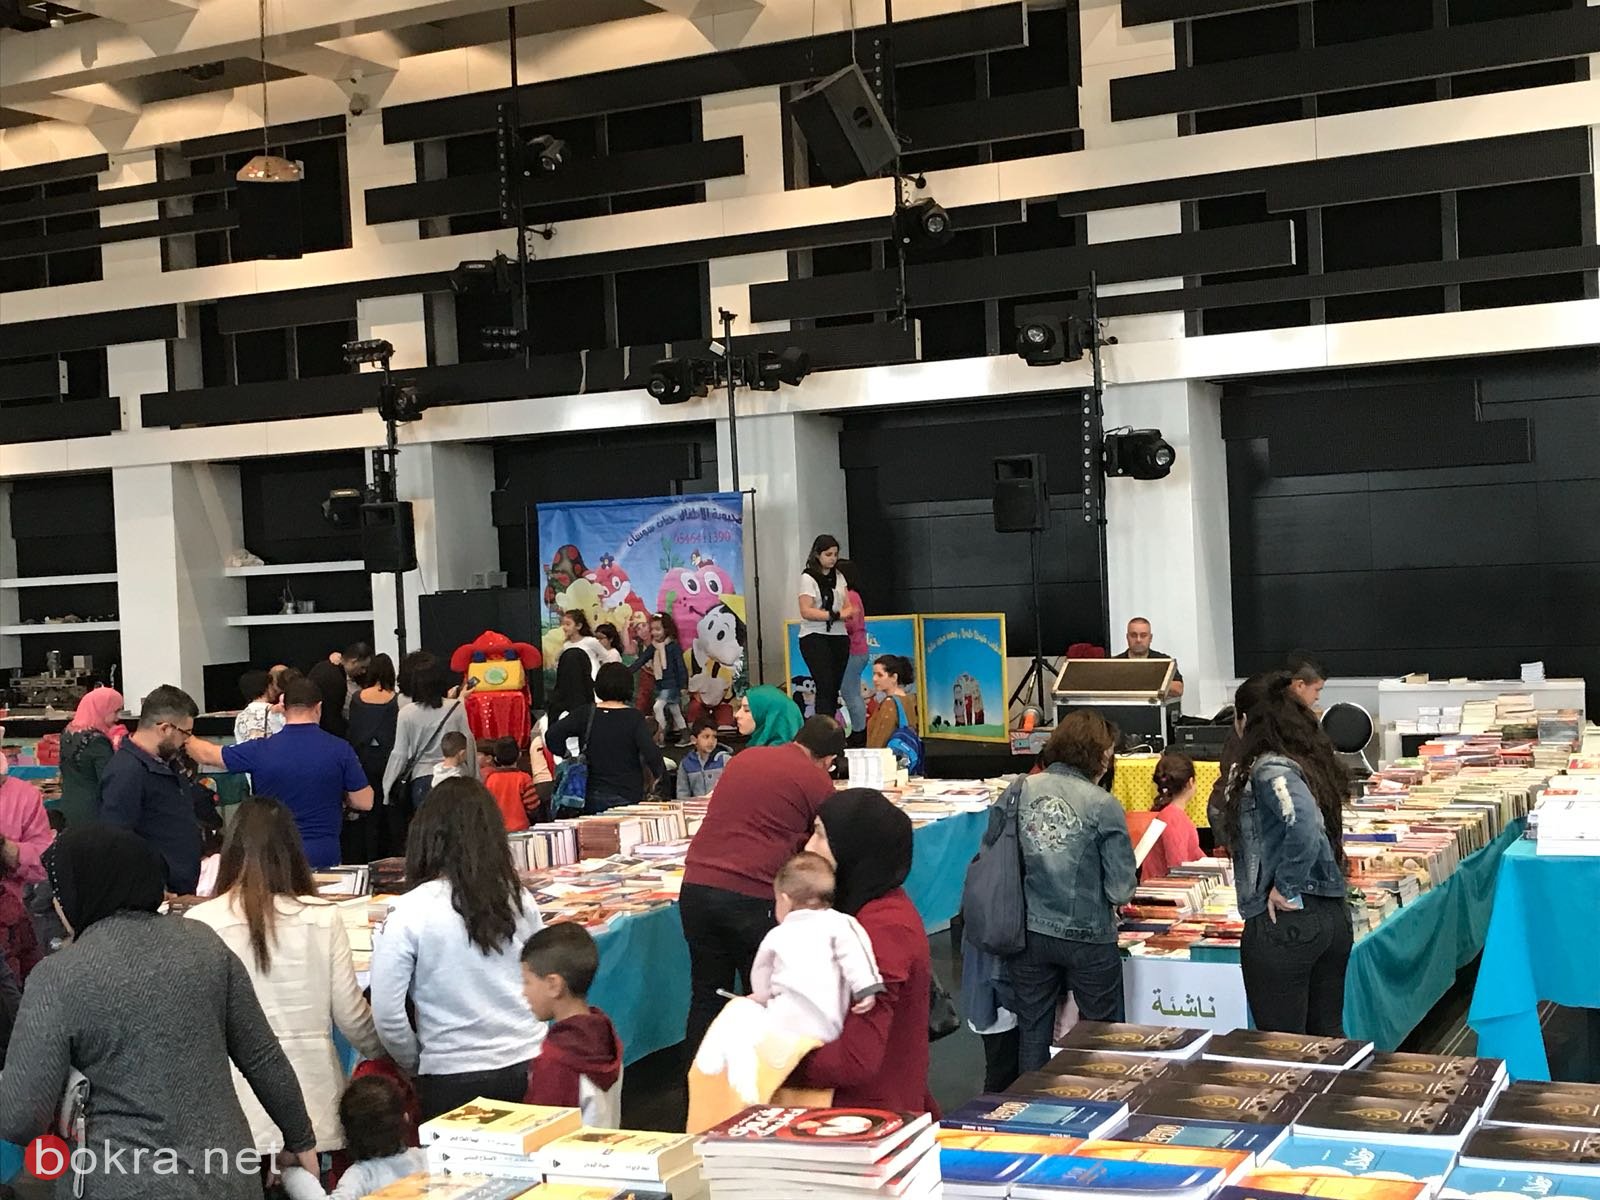 غداً السبت افتتاح اضخم معرض للكتاب في كنيون كنعان – يركا -1